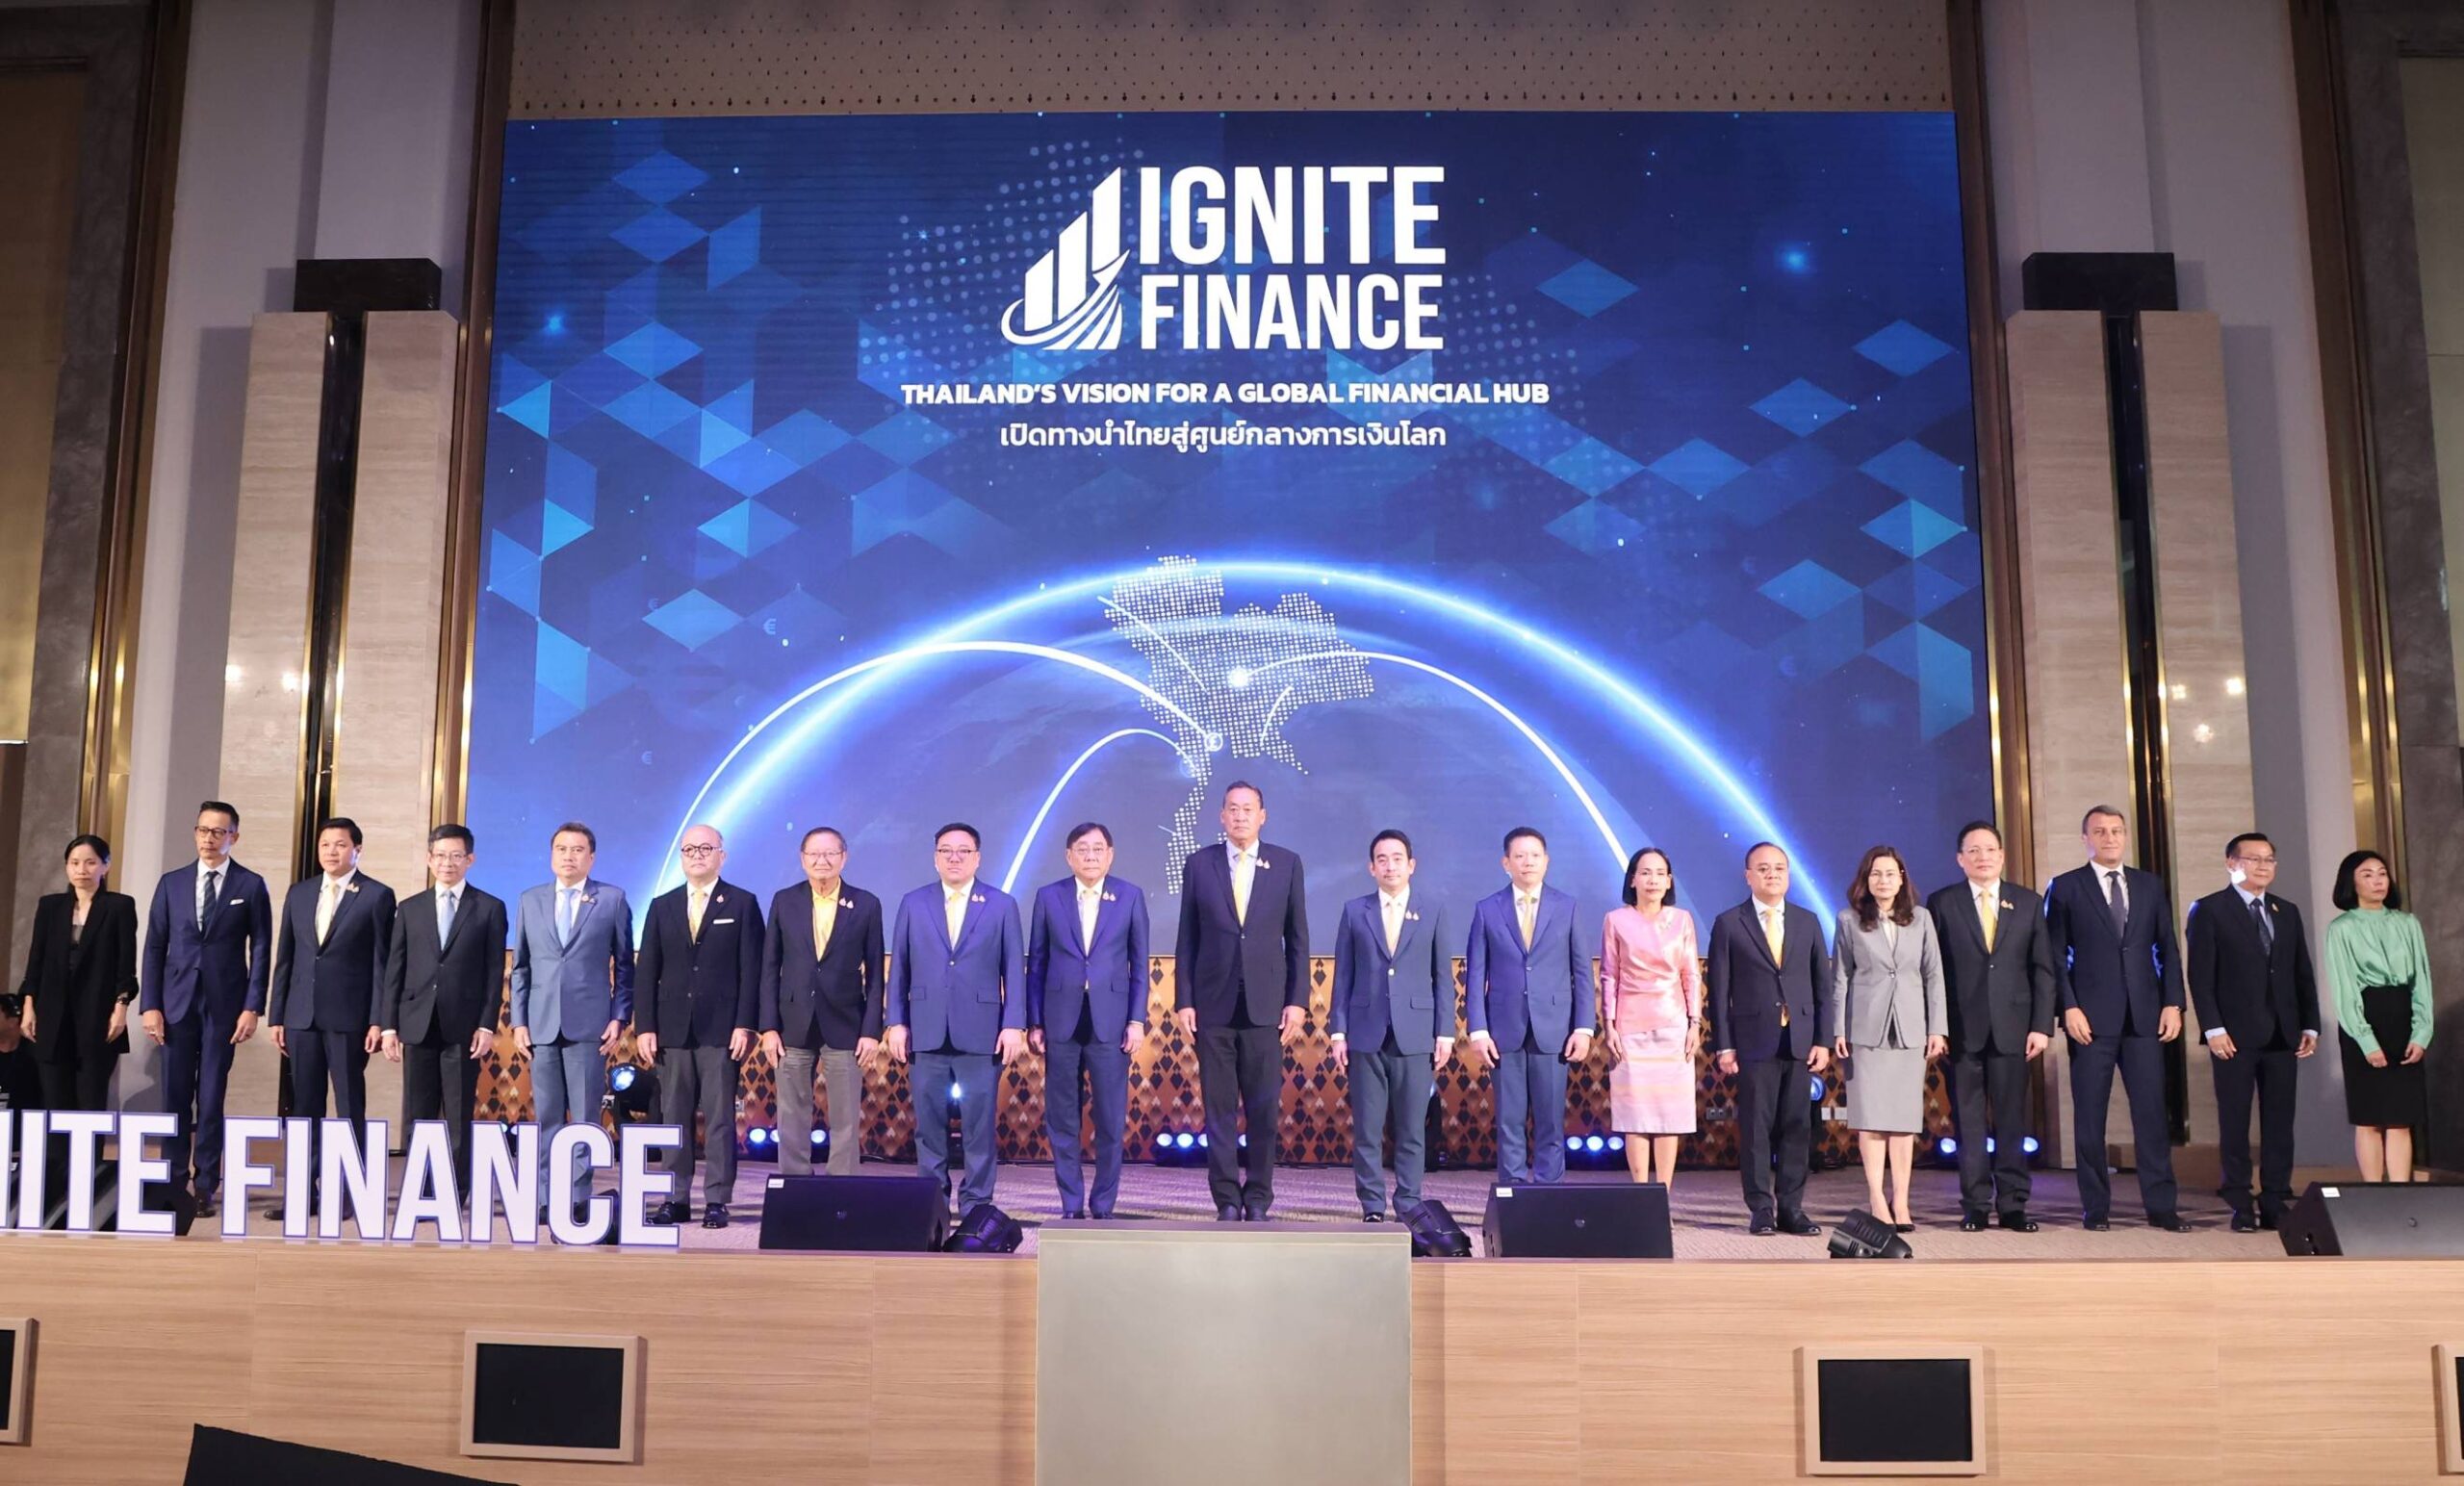 กระทรวงการคลัง เปิดตัวโครงการ “Ignite Finance” เพื่อขับเคลื่อนประเทศไทยสู่การเป็นศูนย์กลางการเงินระดับโลก